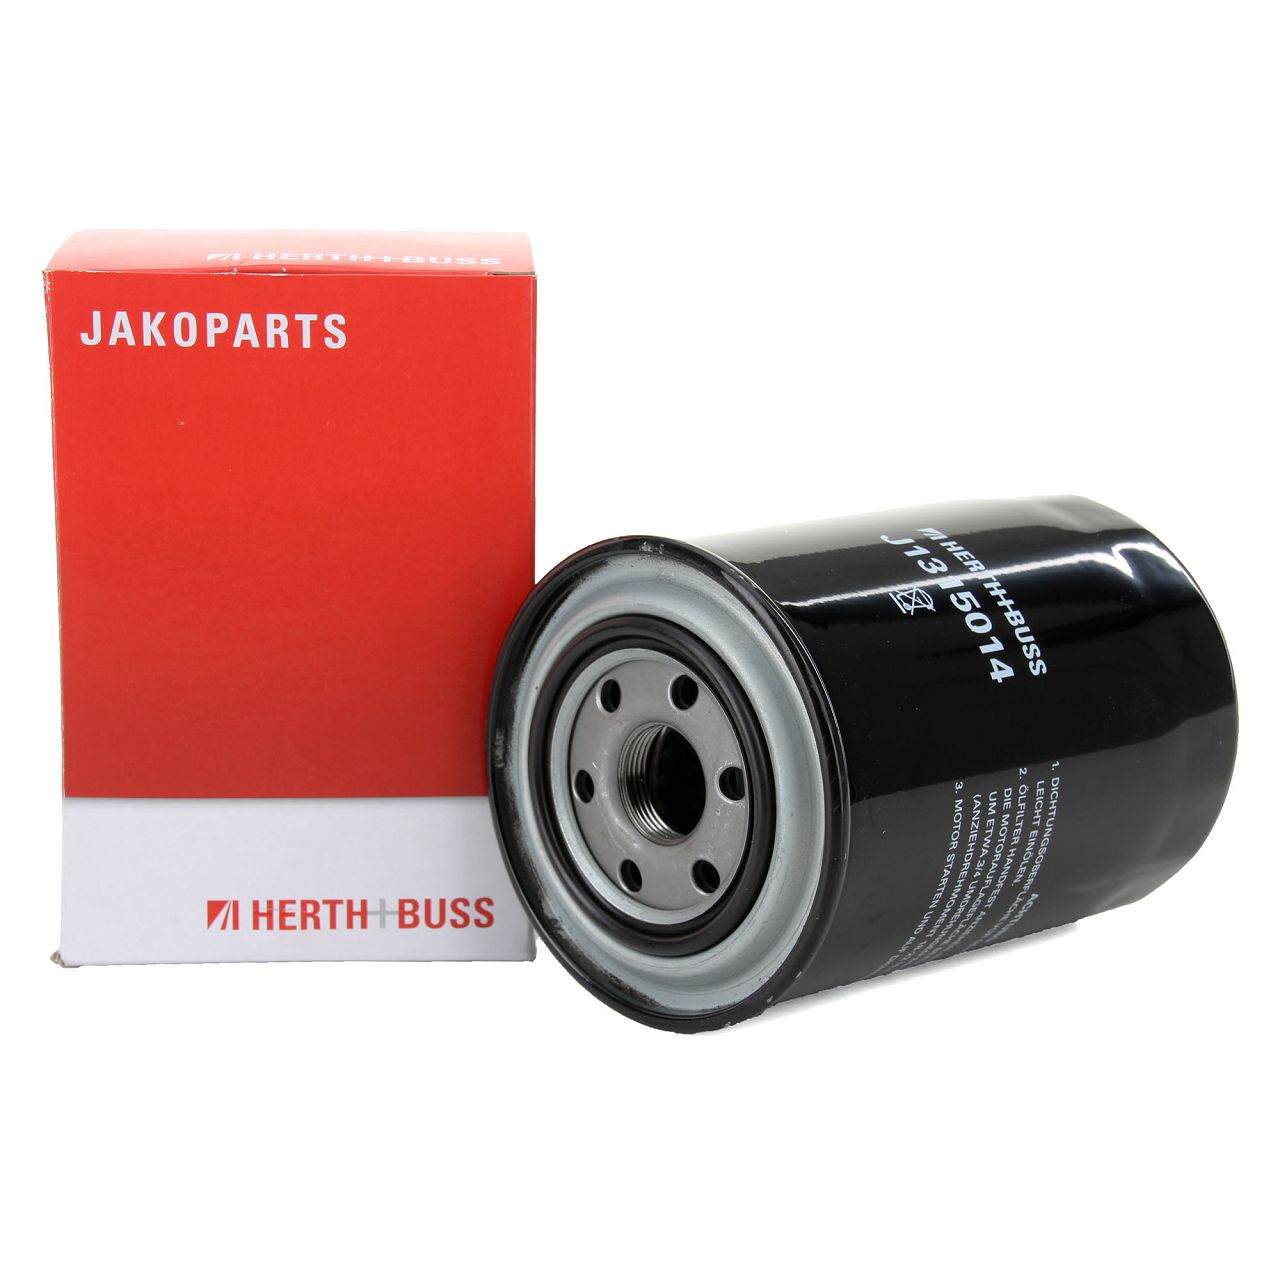 HERTH+BUSS JAKOPARTS Ölfilter Motorölfilter für Mitsubishi Canter Pajero II III